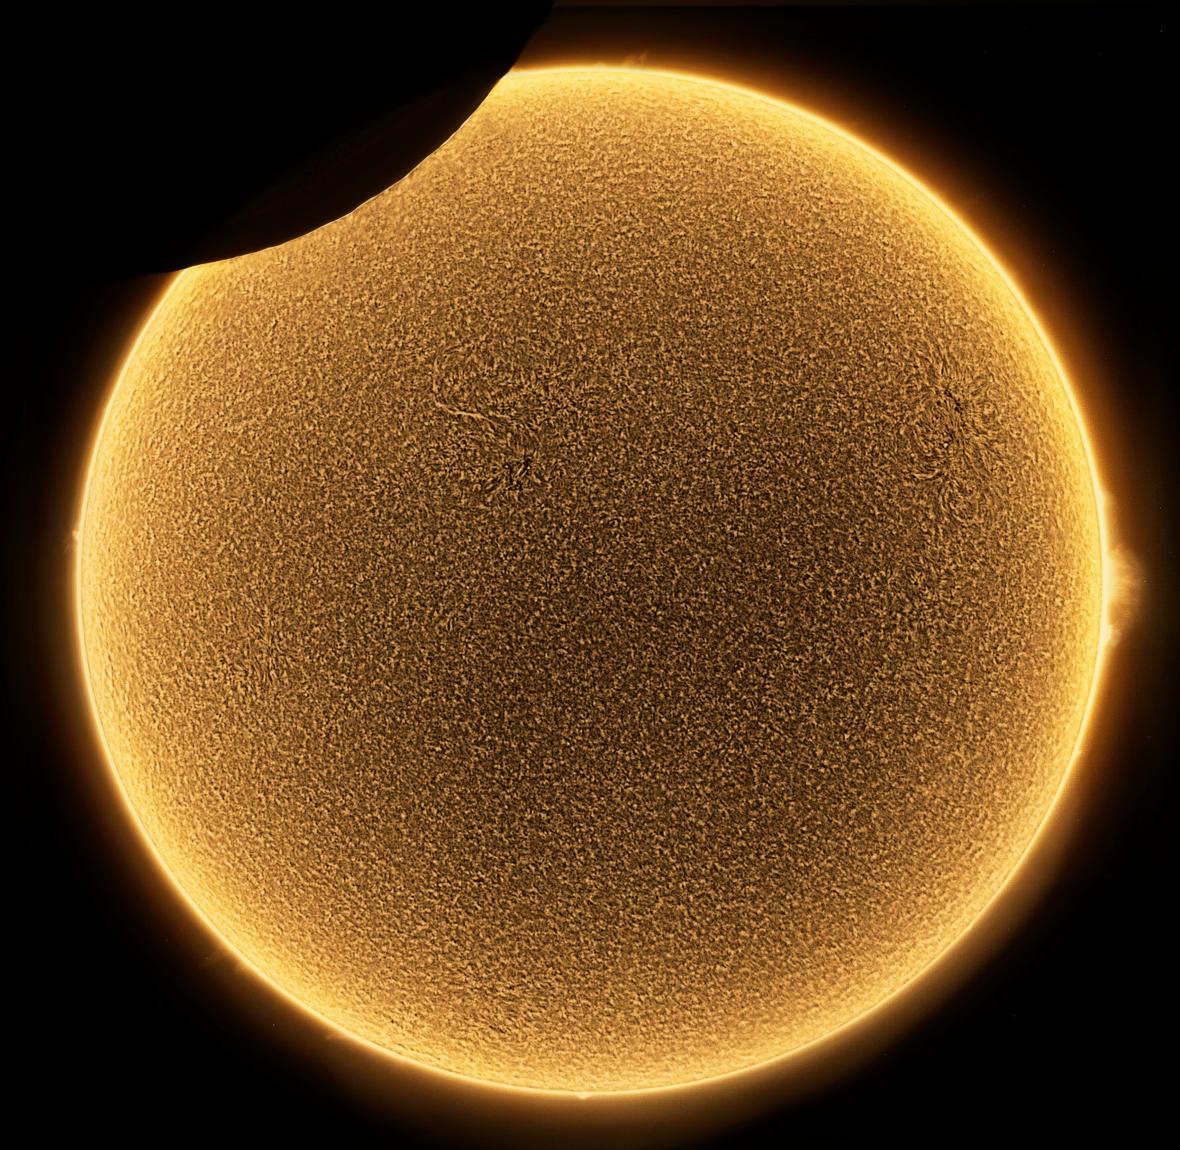 Μερική έκλειψη του Ηλίου φωτογραφισμένη στην περιοχή Βένετο της Ιταλίας, τον περυσινό Ιούνιο. Ηταν μια μέρα χαμηλής ηλιακής δραστηριότητας που επέτρεψε στον φωτογράφο να απαθανατίσει αυτή την ασυνήθιστα καθαρή εικόνα της σιλουέτας της Σελήνης